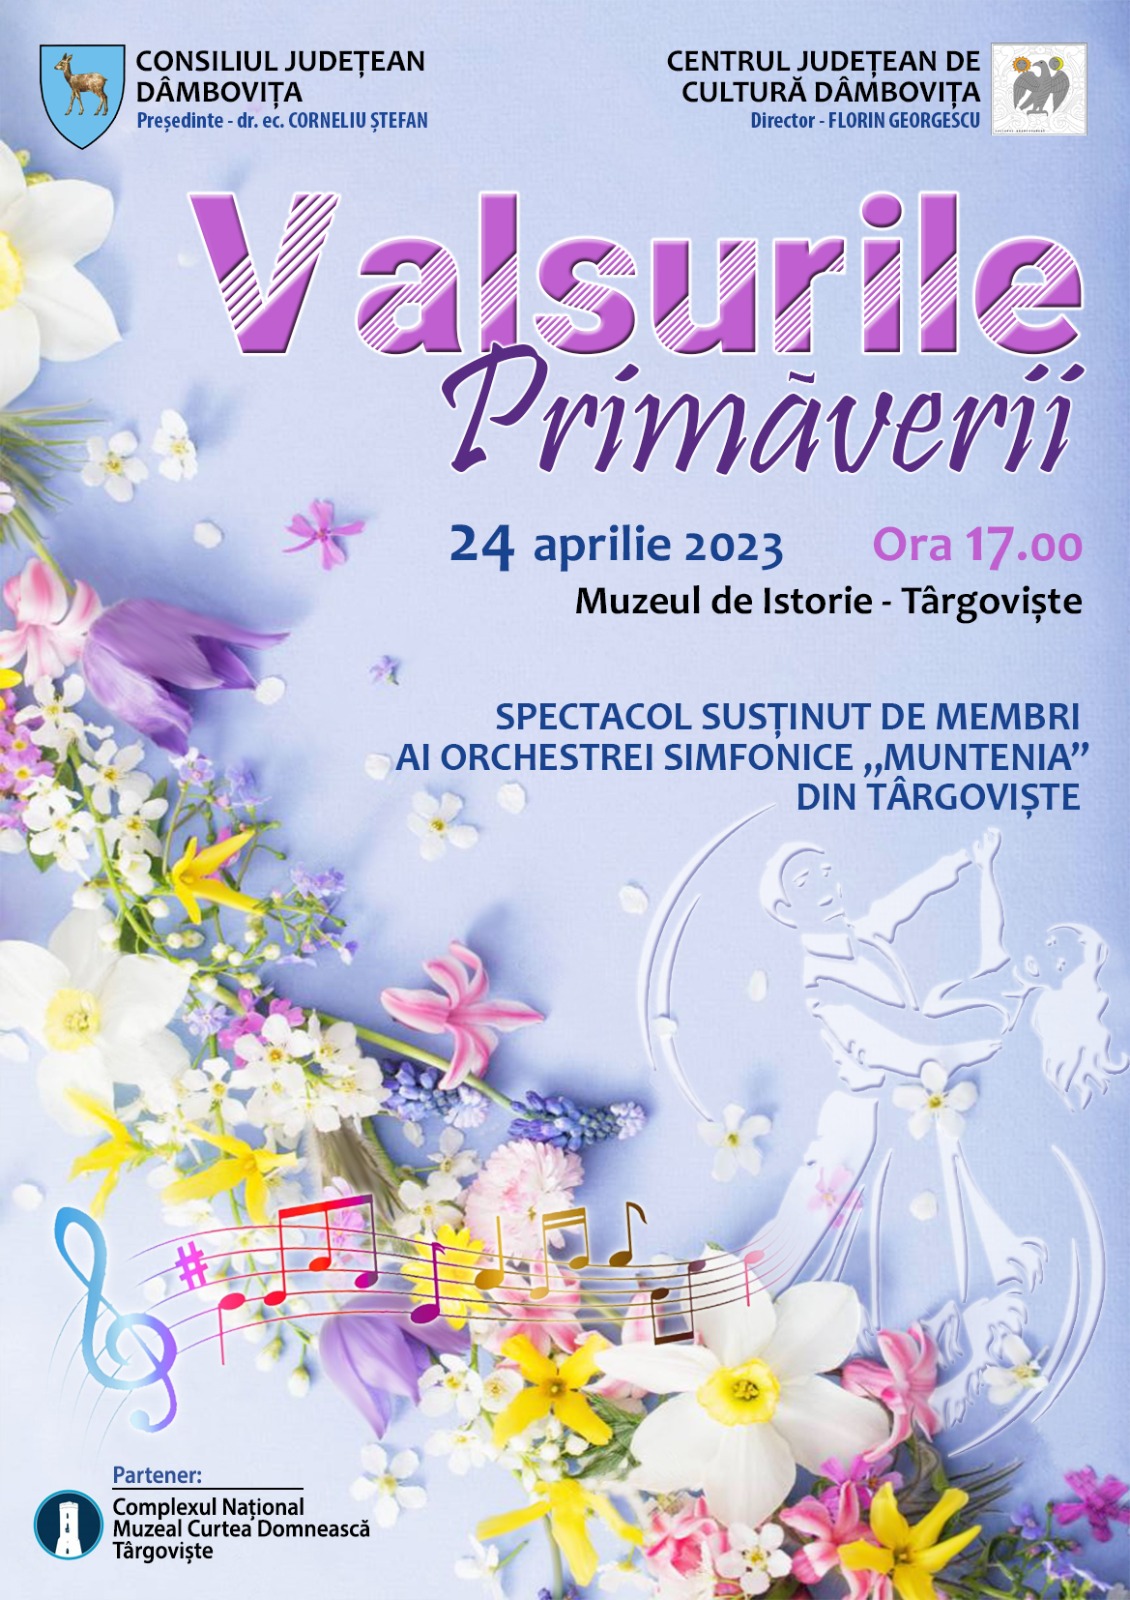 Primăvara, pe acorduri de vals. Luni, 24 aprilie, concert de muzică clasică la Muzeul de Istorie din Târgoviște